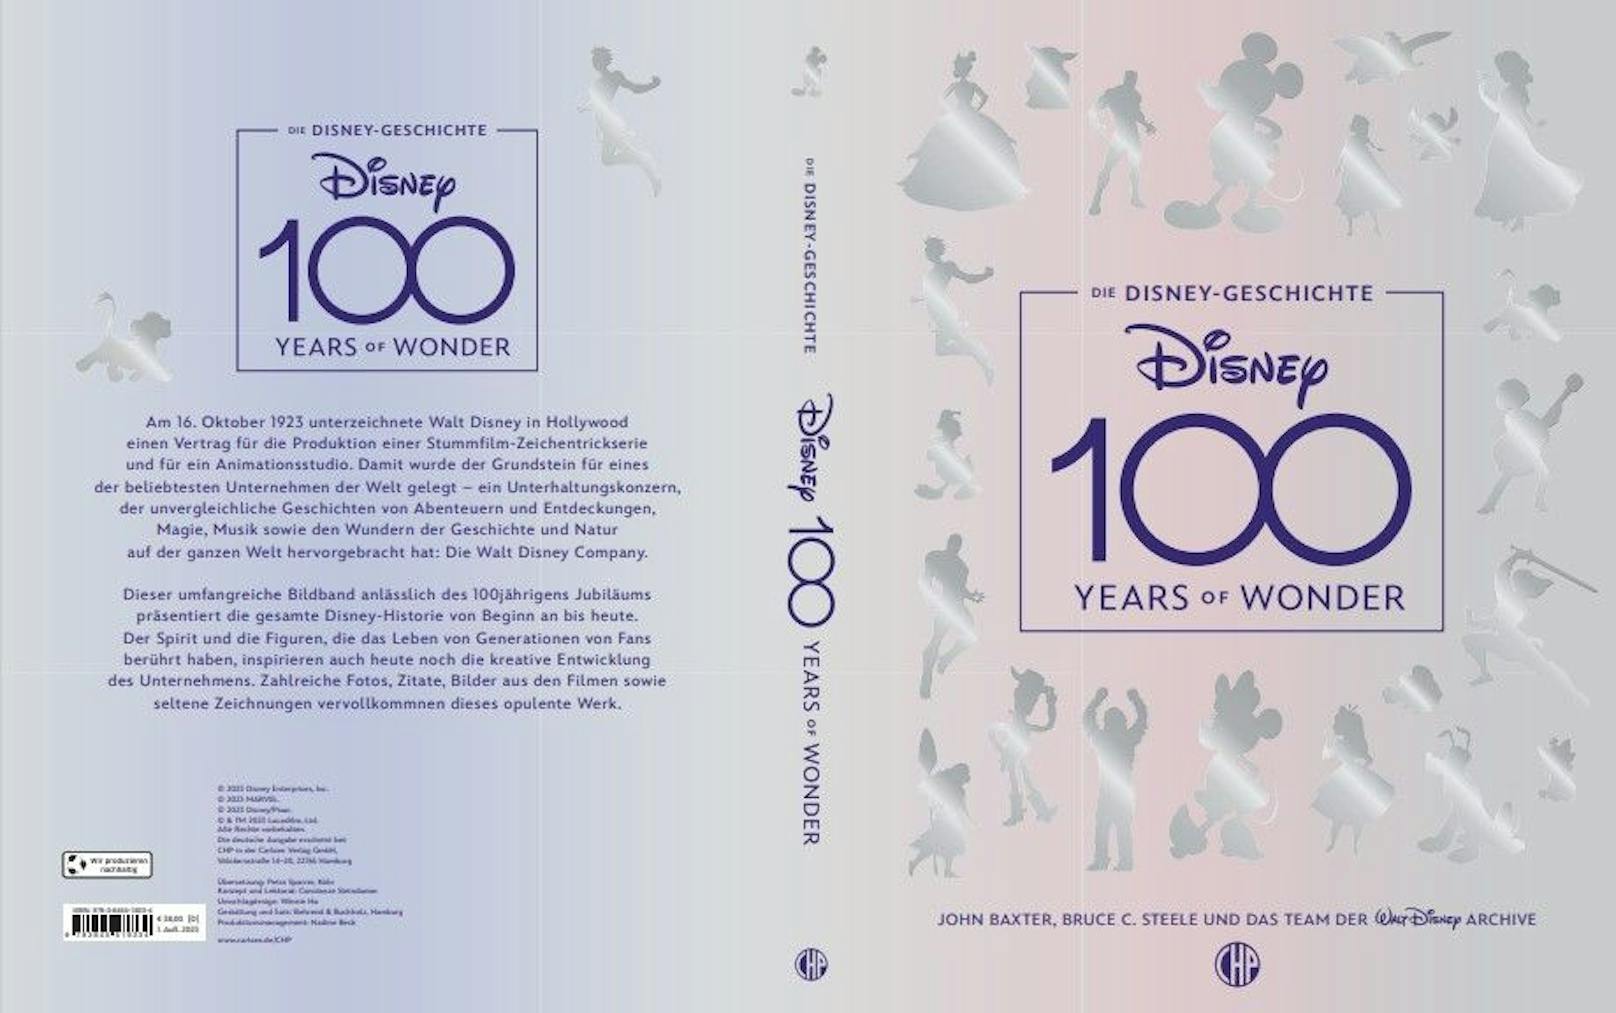 Disney100 Years of Wonder